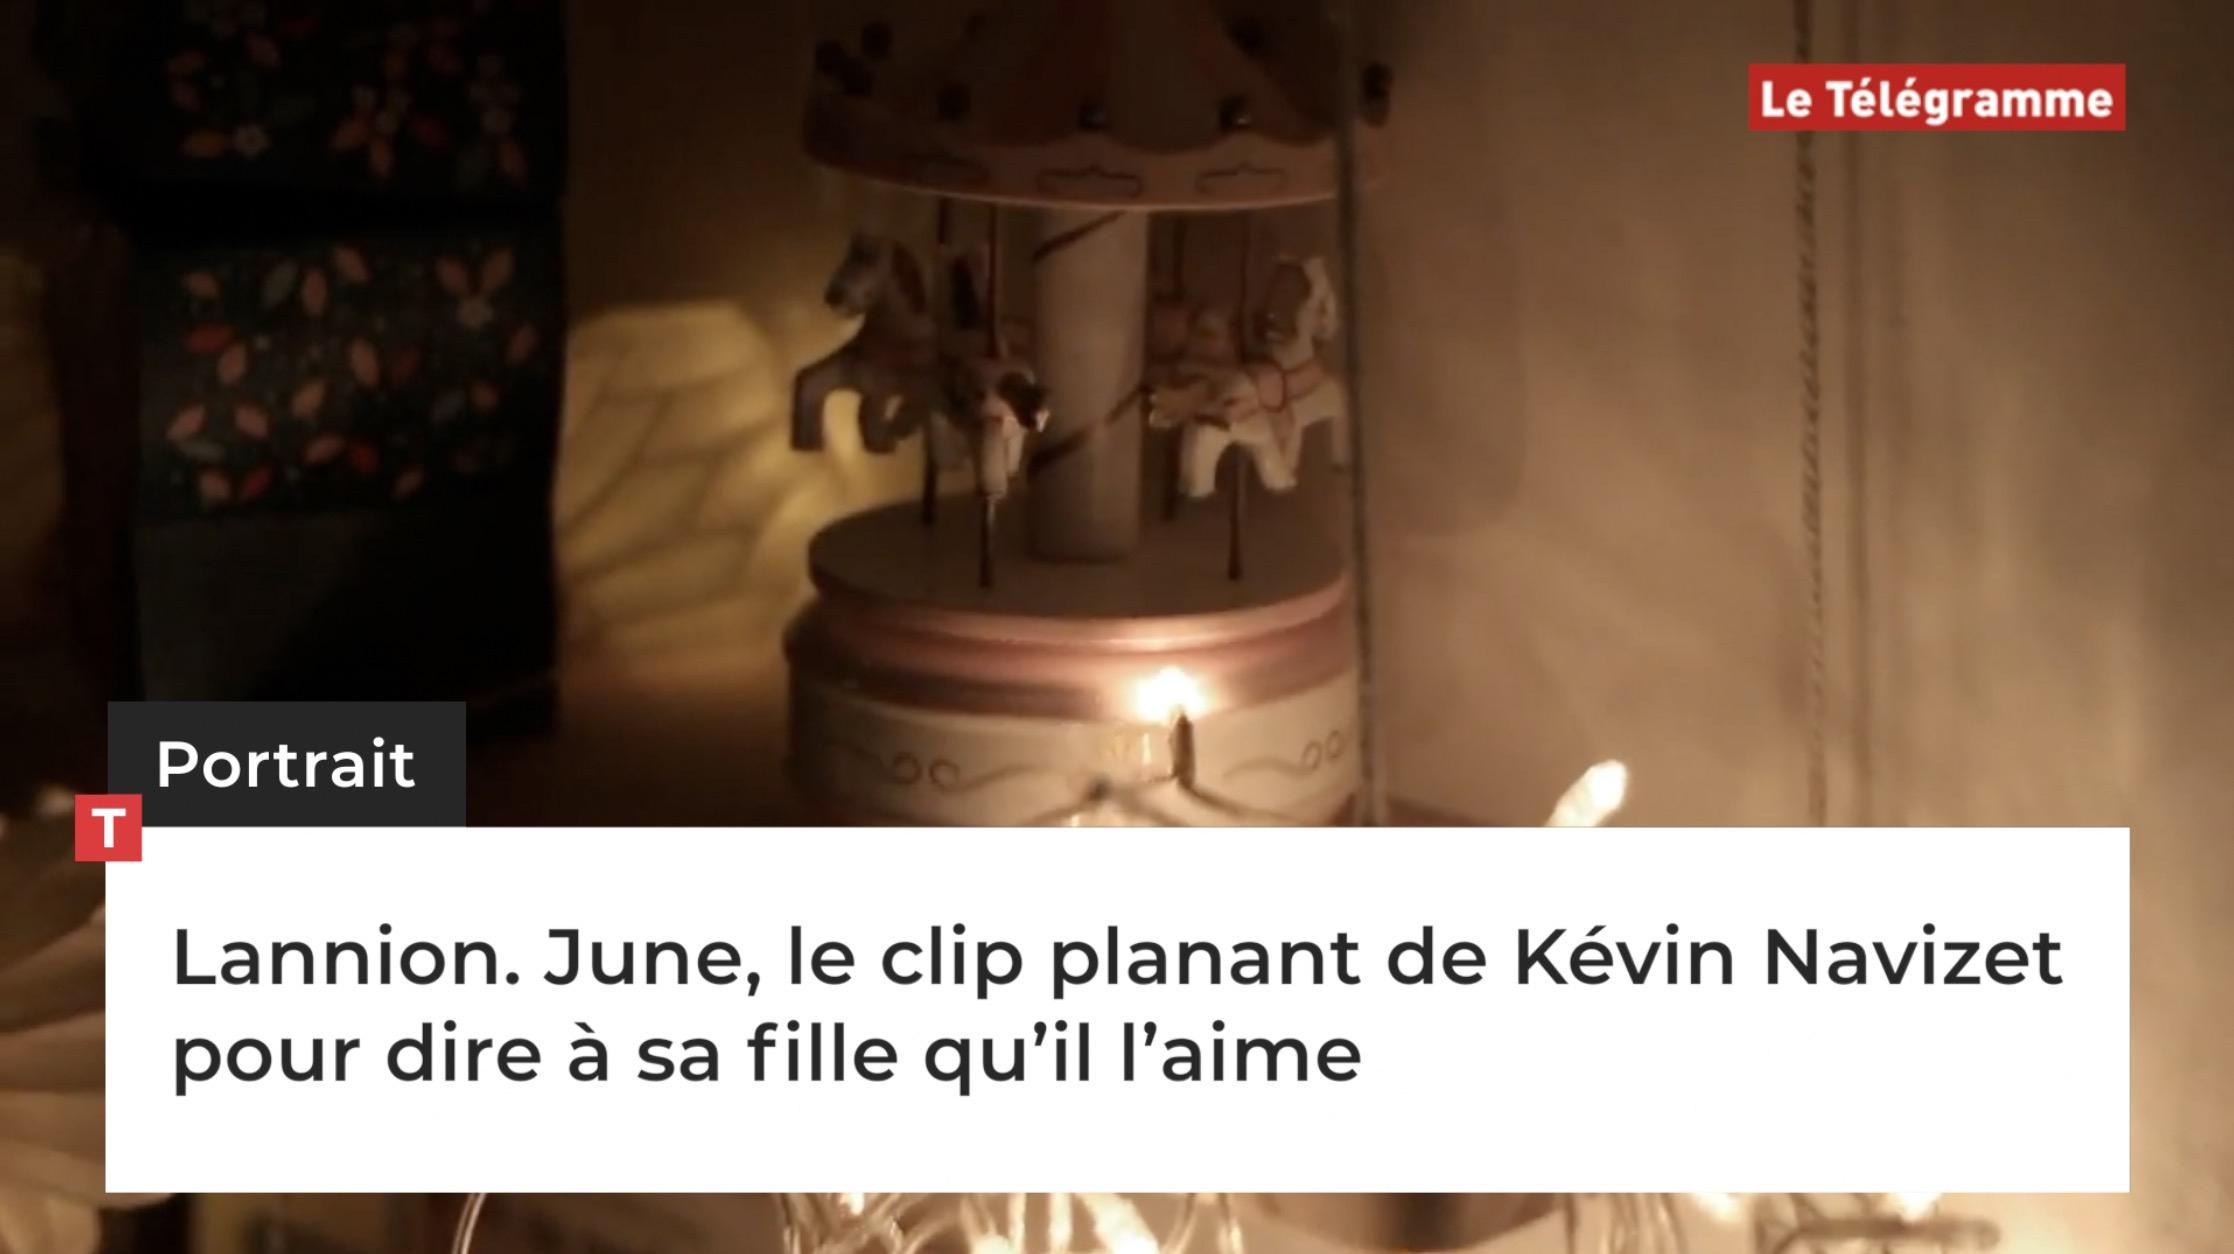 Lannion. June, le clip planant de Kévin Navizet pour dire à sa fille qu’il l’aime (Le Télégramme)